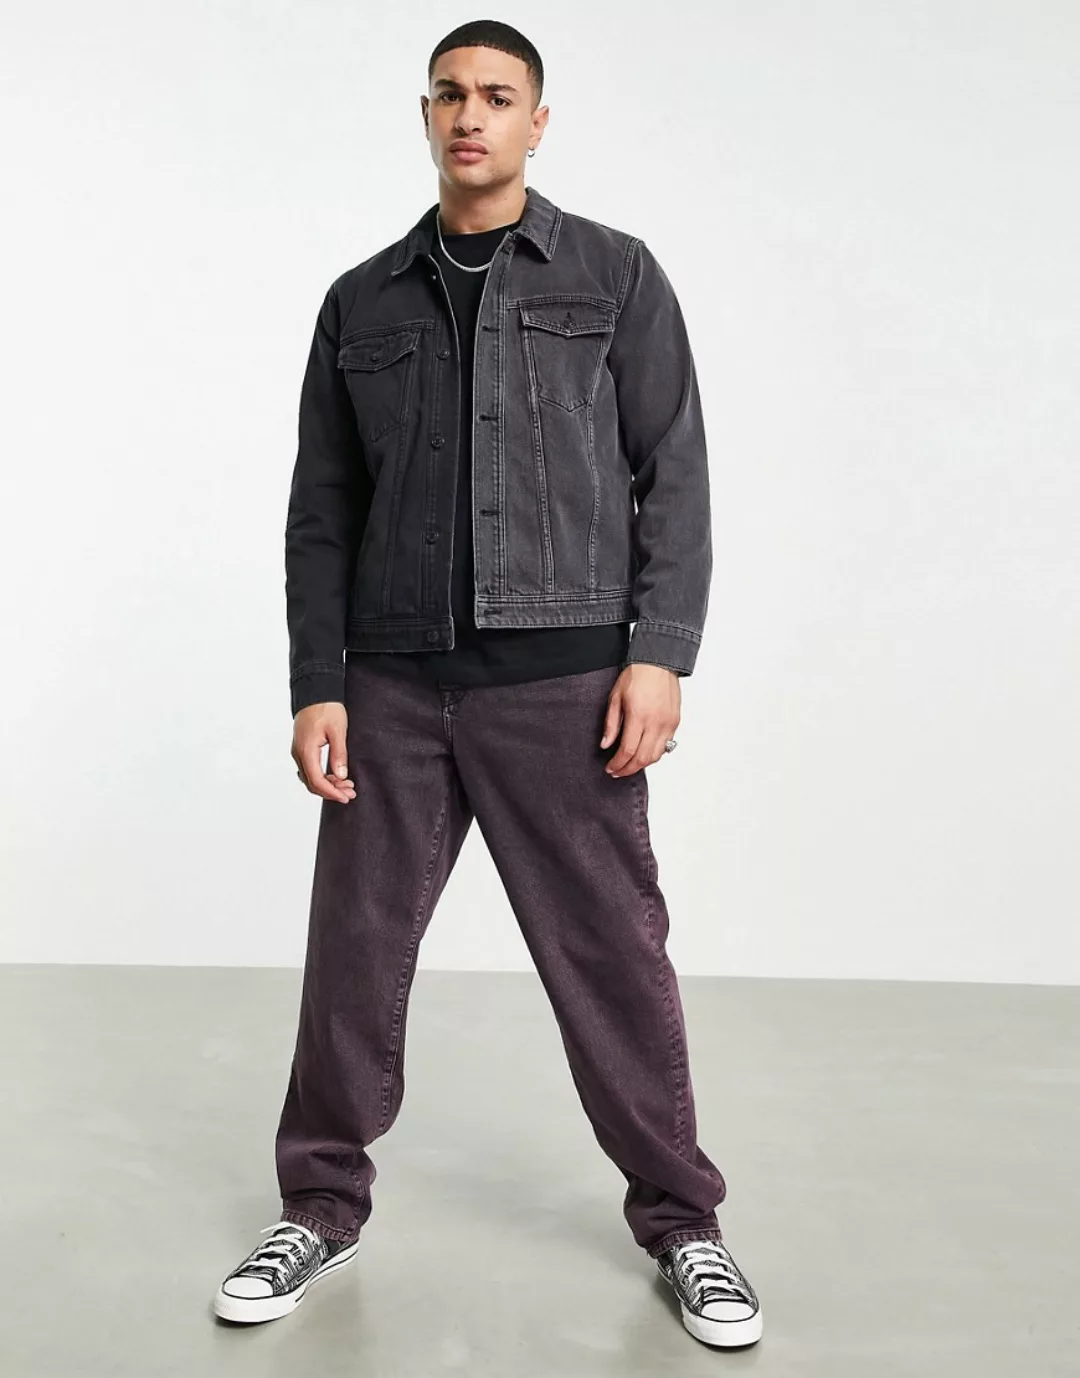 Topman – Jeansjacke in gespleißtem Grau und verwaschenem Schwarz günstig online kaufen